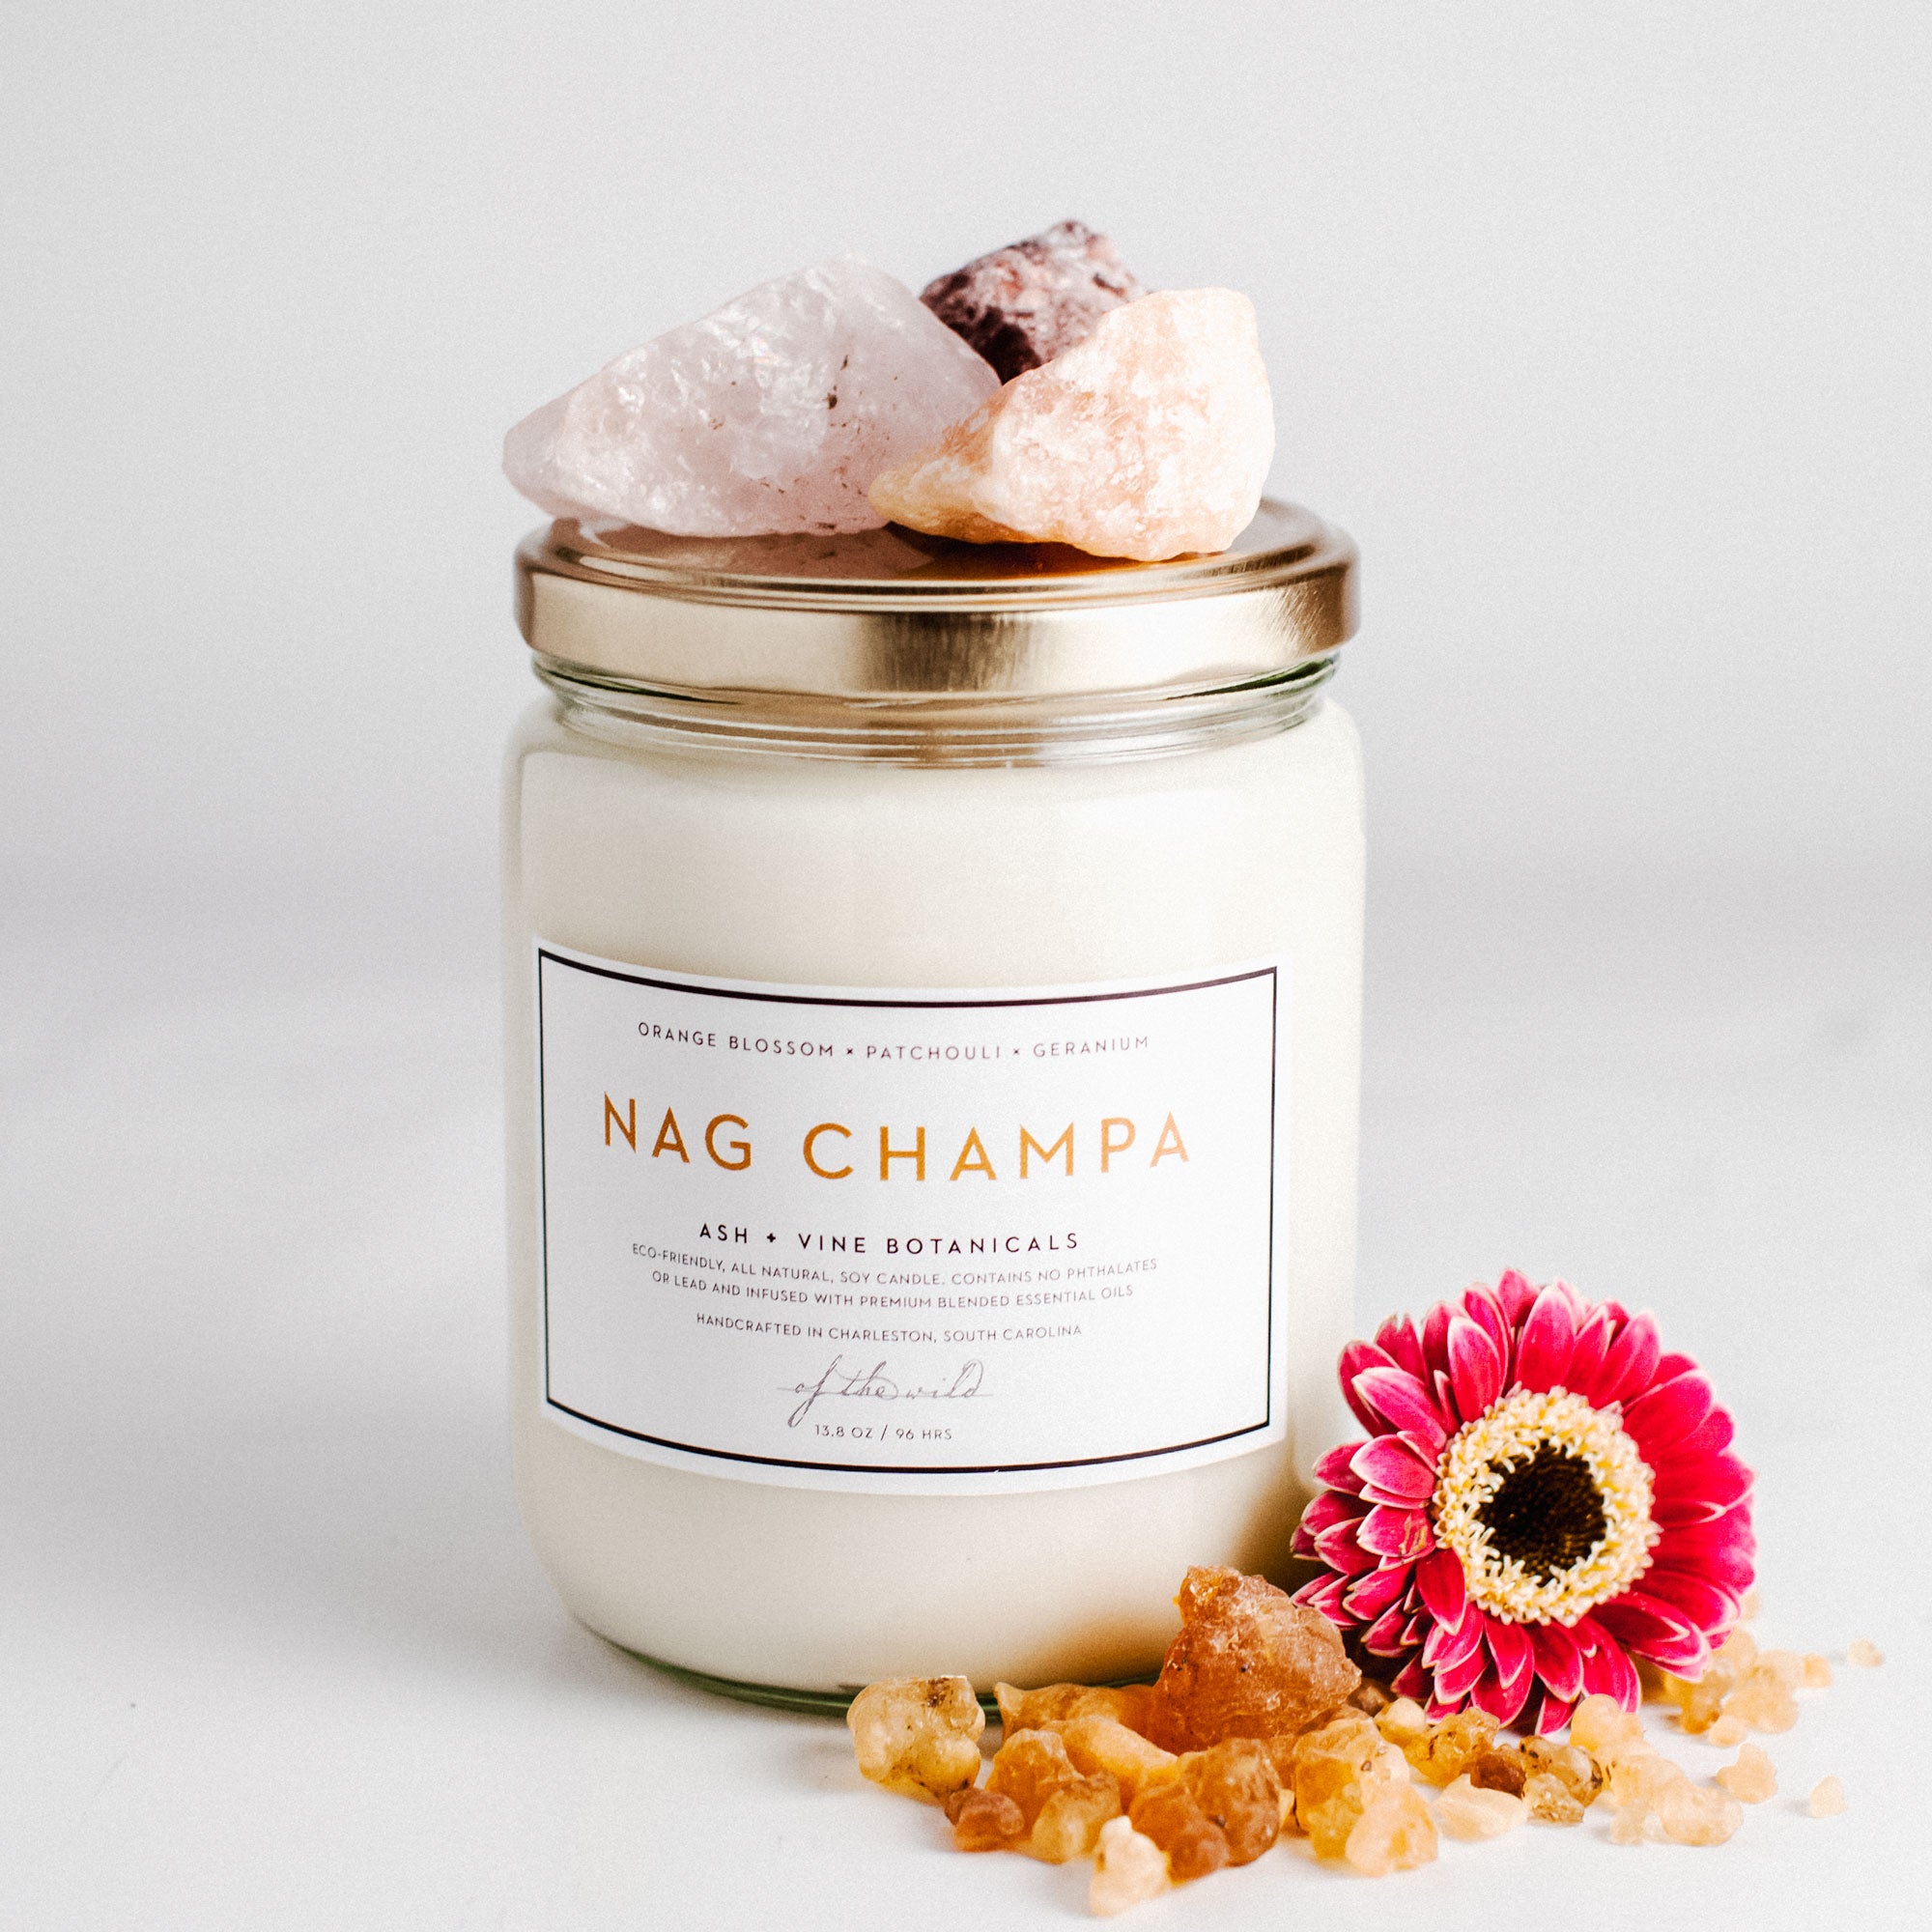 Nag Champa – Ash + Vine Botanicals